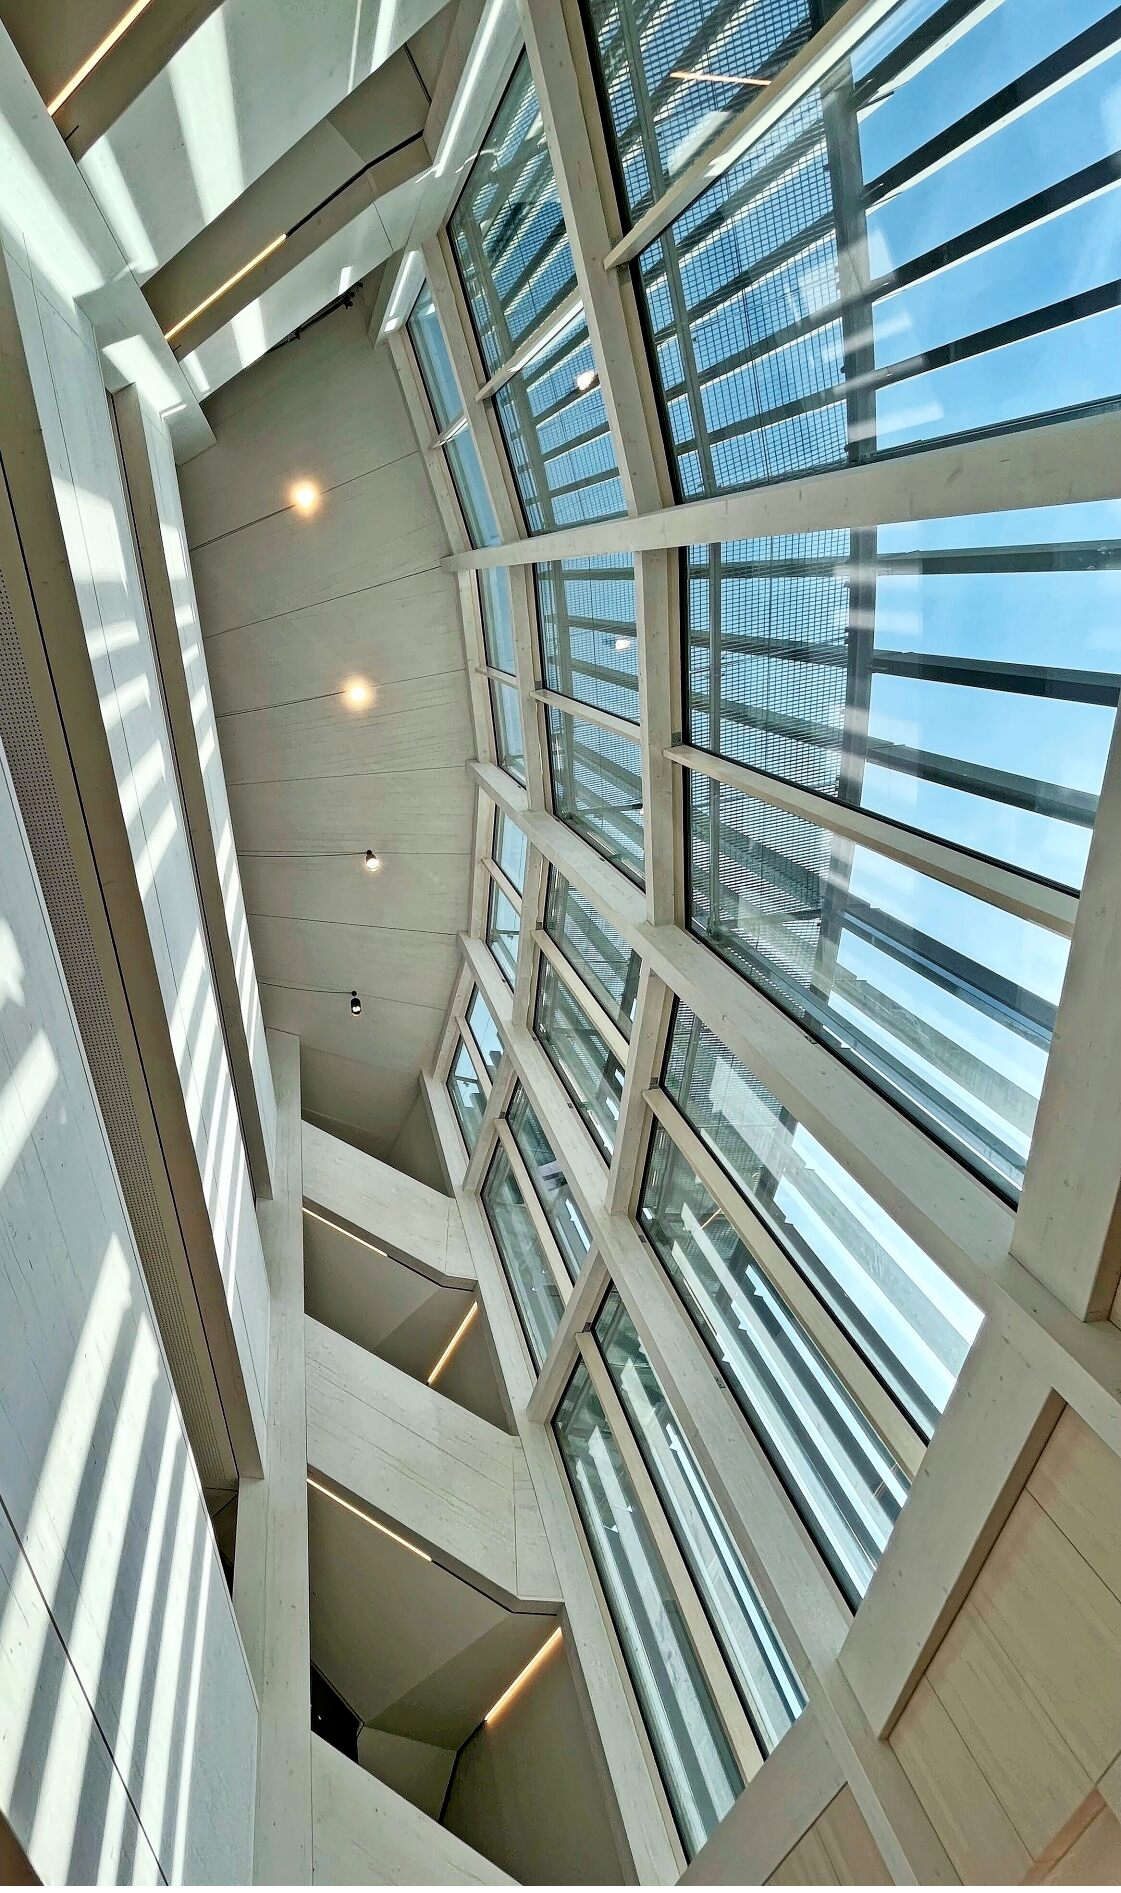 24 großflächige Fenster sorgen dafür, dass das viergeschossige Foyer hell, offen und einladend wirkt. FOTO: JOCHEN BERGER